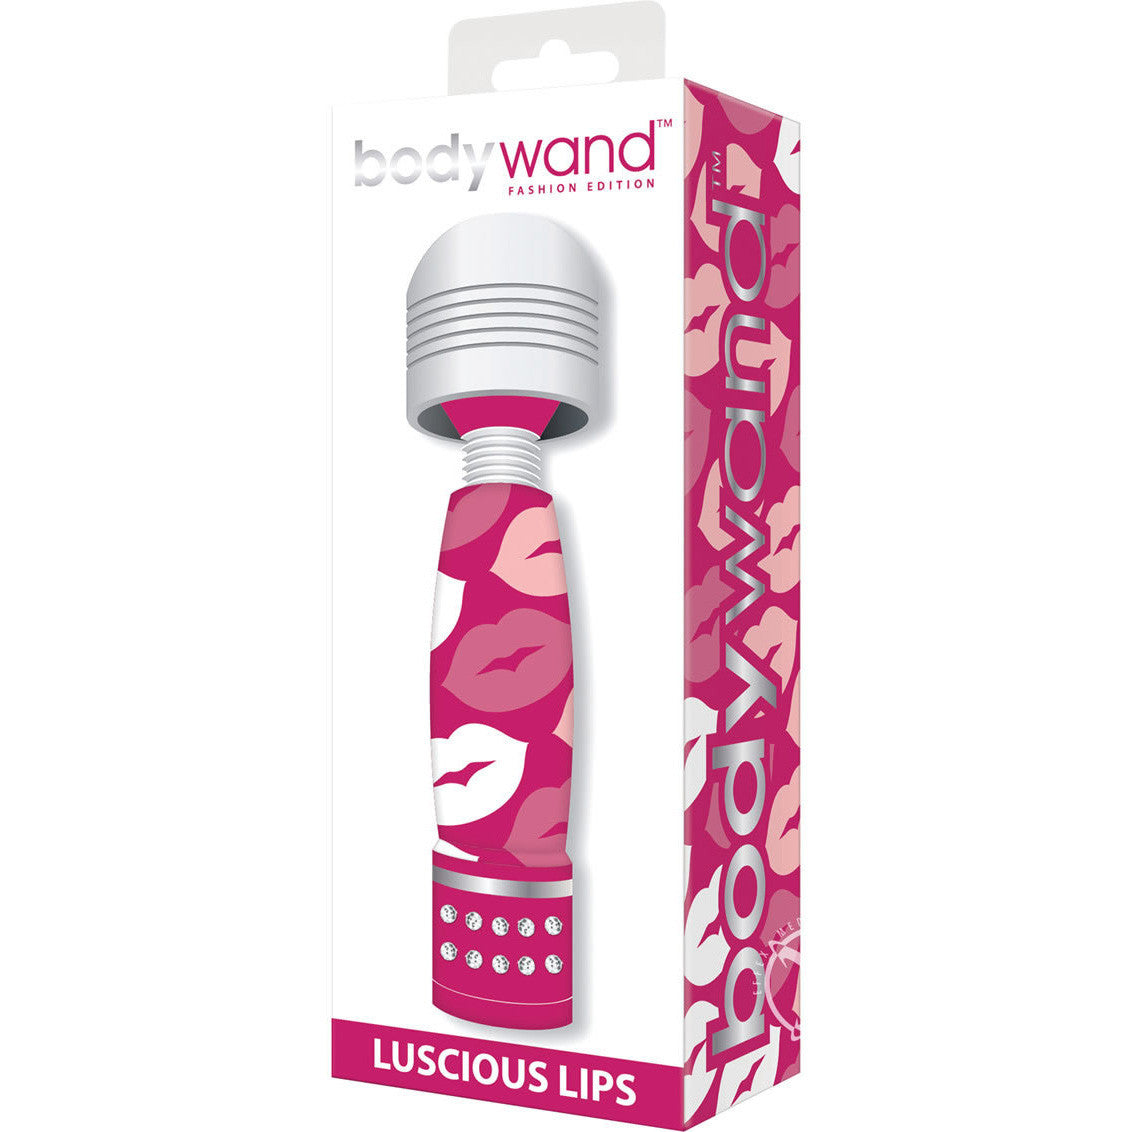 Bodywand - Luscious Lips Mini Body Wand Massager -  Mini Wand Massagers (Vibration) Non Rechargeable  Durio.sg